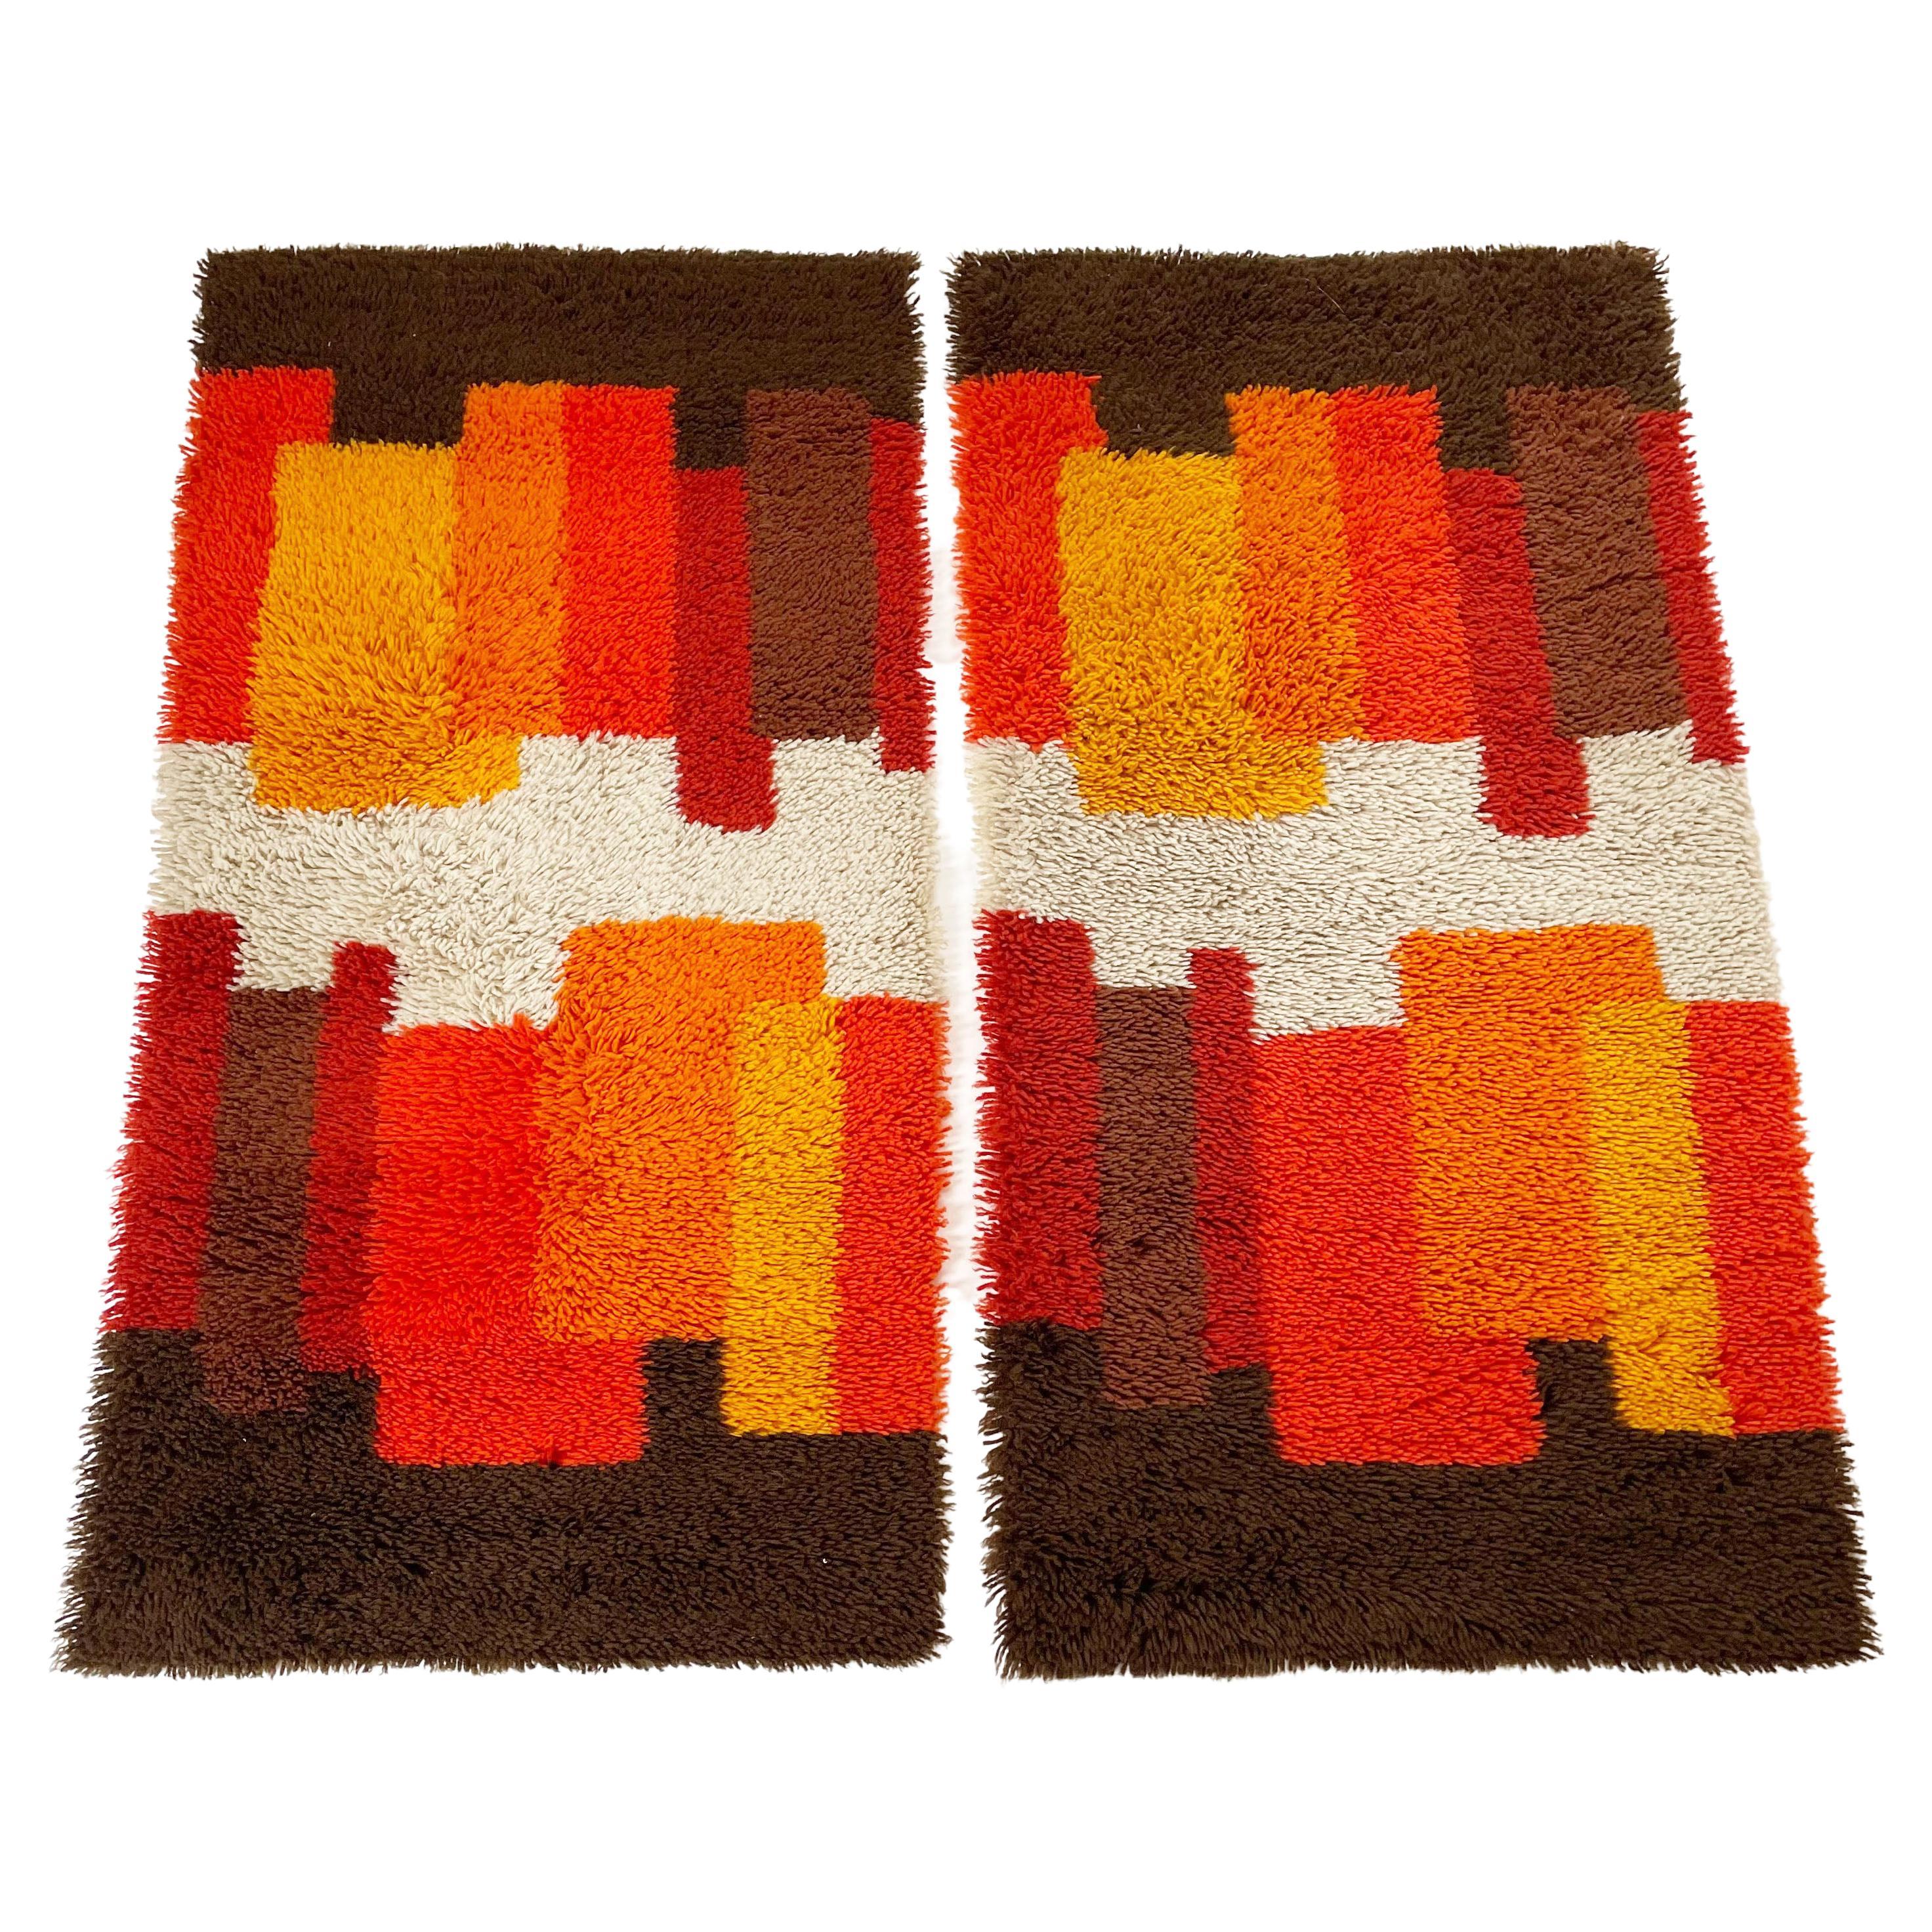 Ensemble de 2 tapis Rya modernistes multicolores à poils longs multicolores de Desso, Pays-Bas, 1970